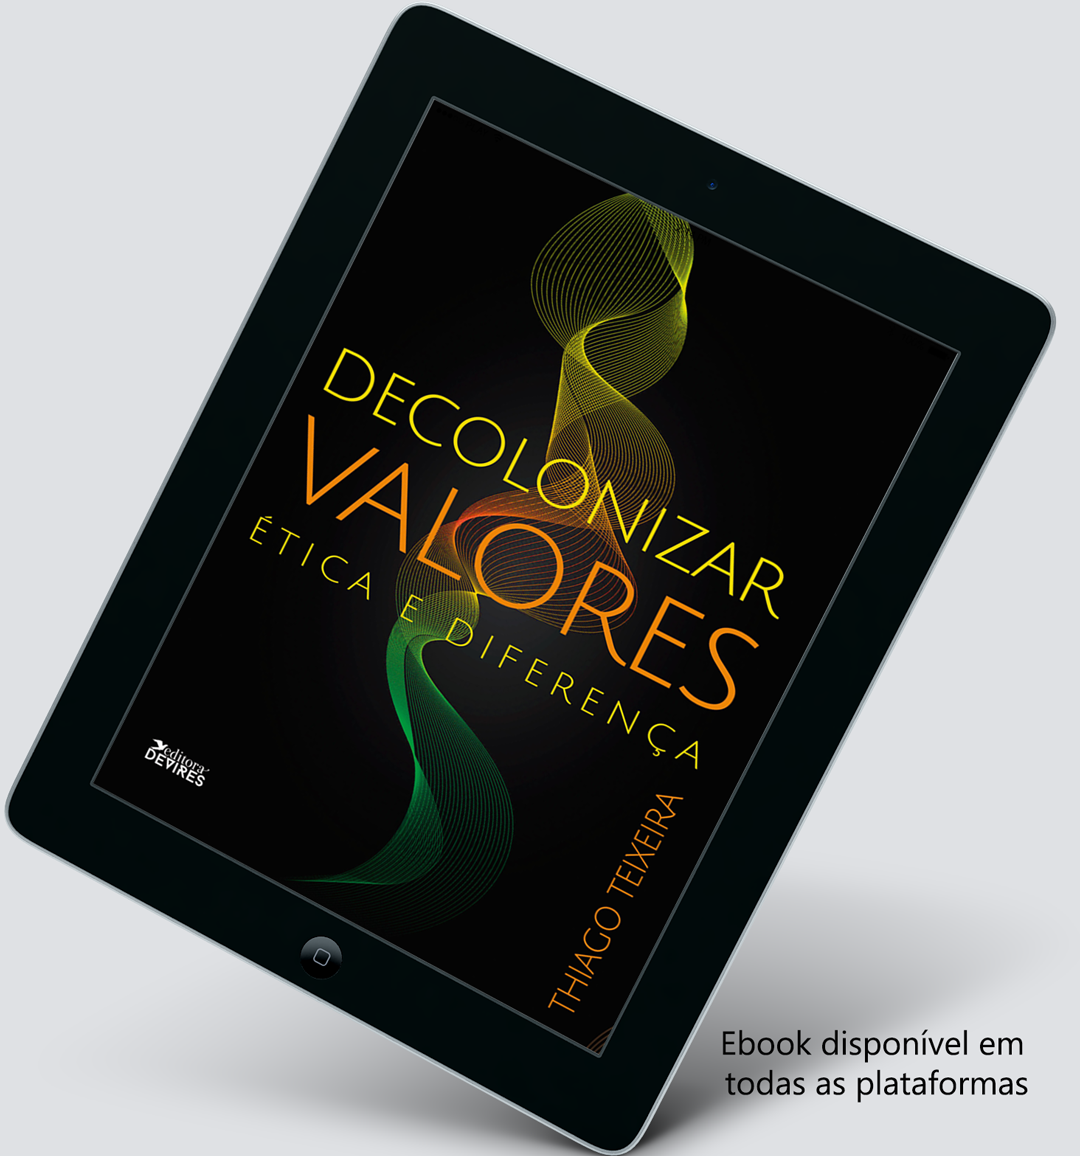 Editora lança versão e-book de “Decolonizar Valores: ética e diferença”, uma obra disruptiva e transformadora